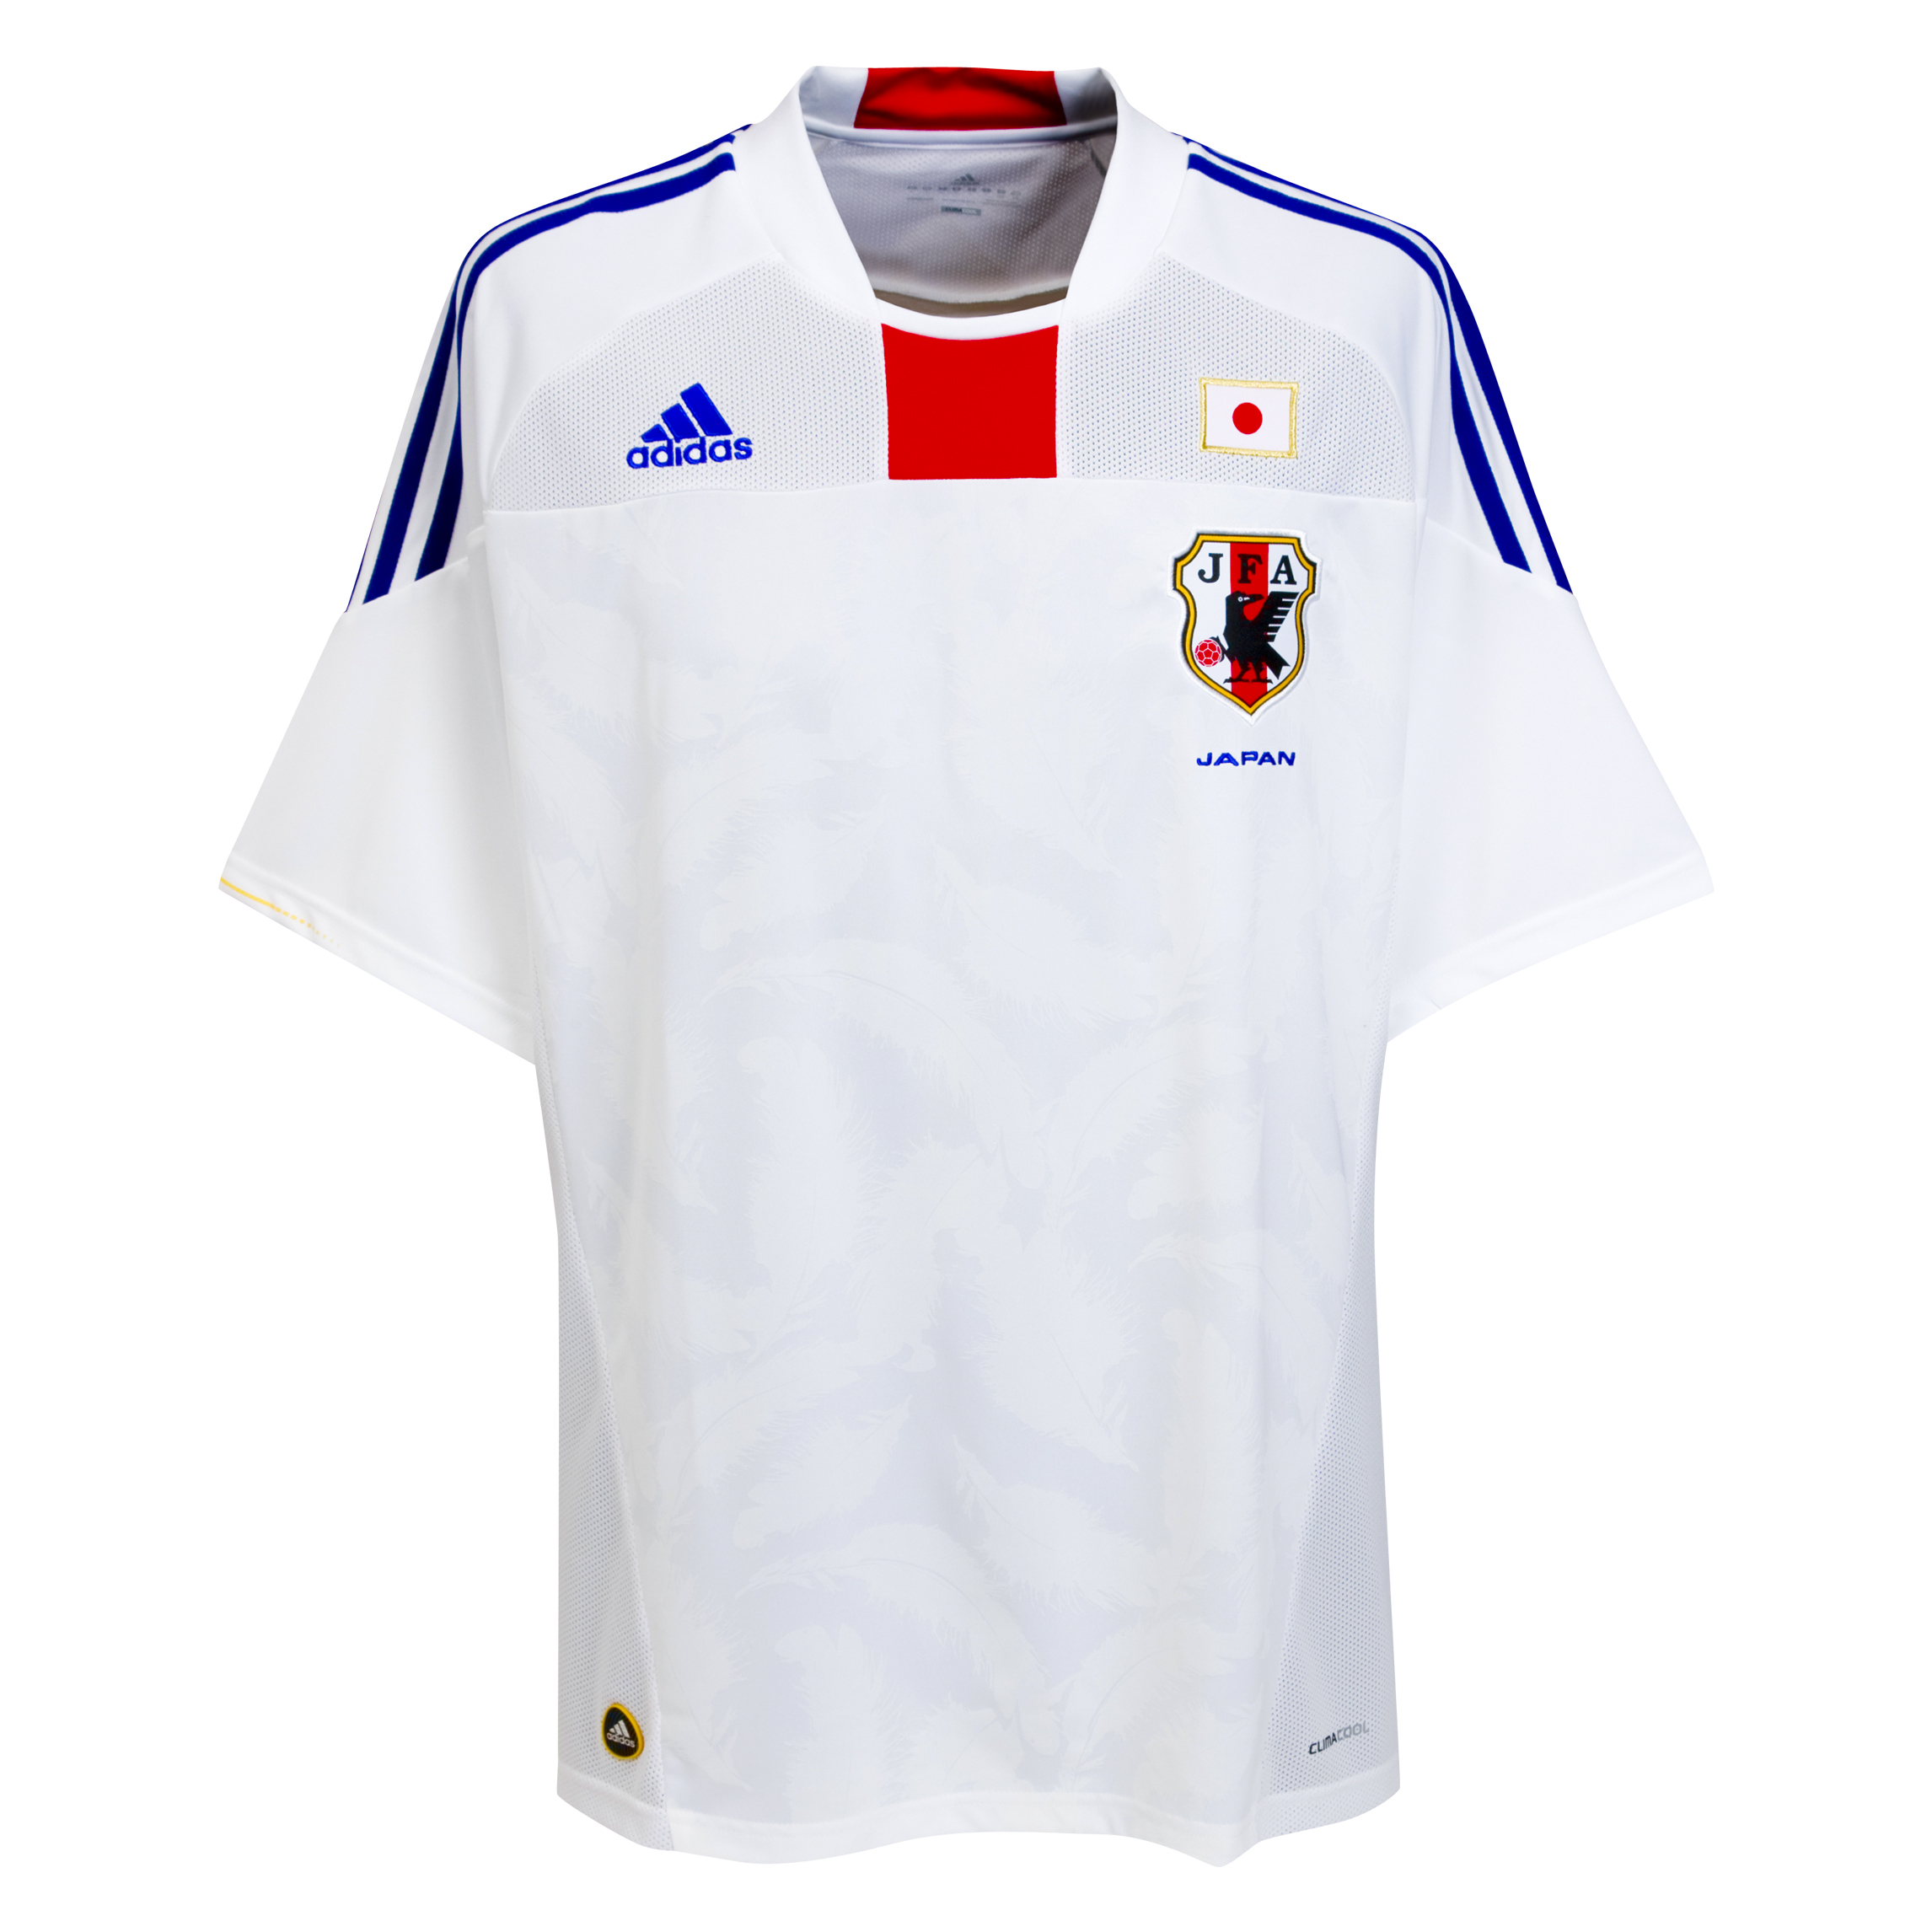 ملابس المنتخبات لكأس العالم 2010 Kb-66941